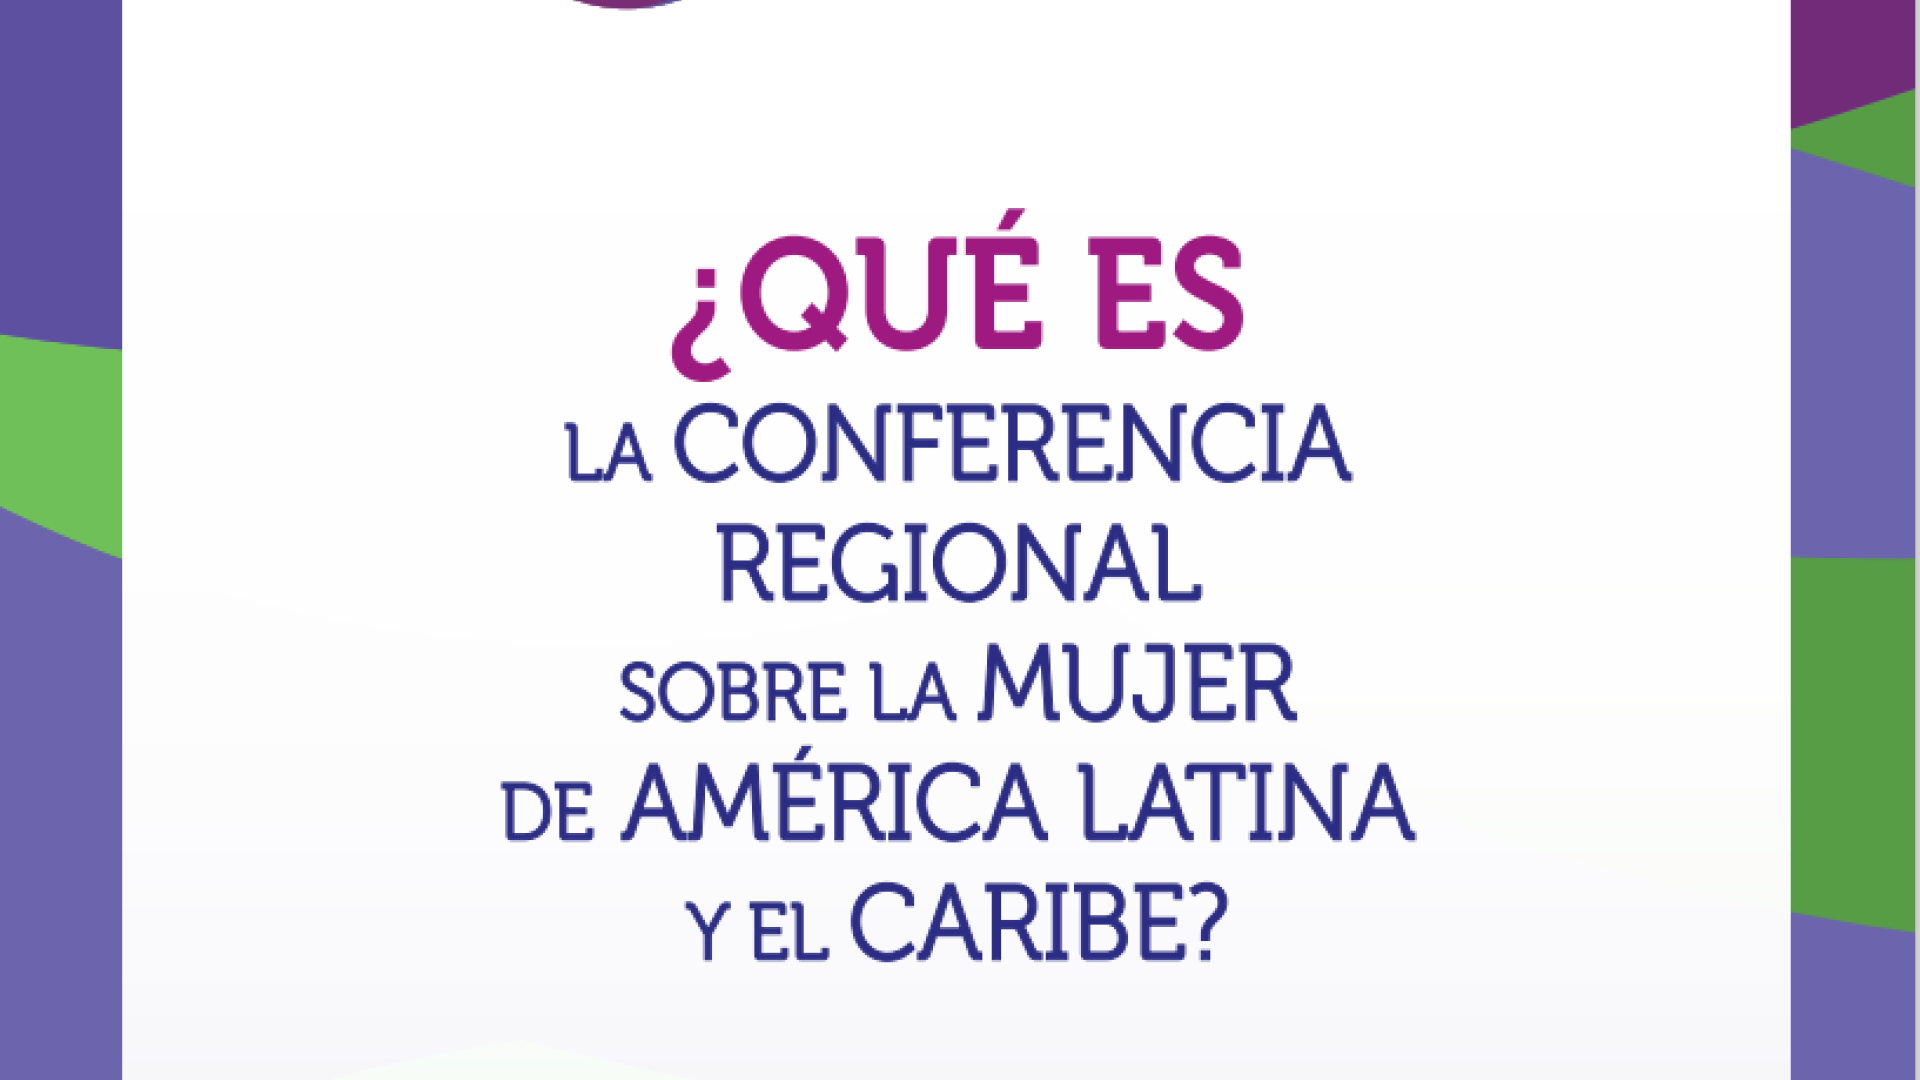 Qué es la Conferencia Regional sobre la Mujer de América Latina y el Caribe